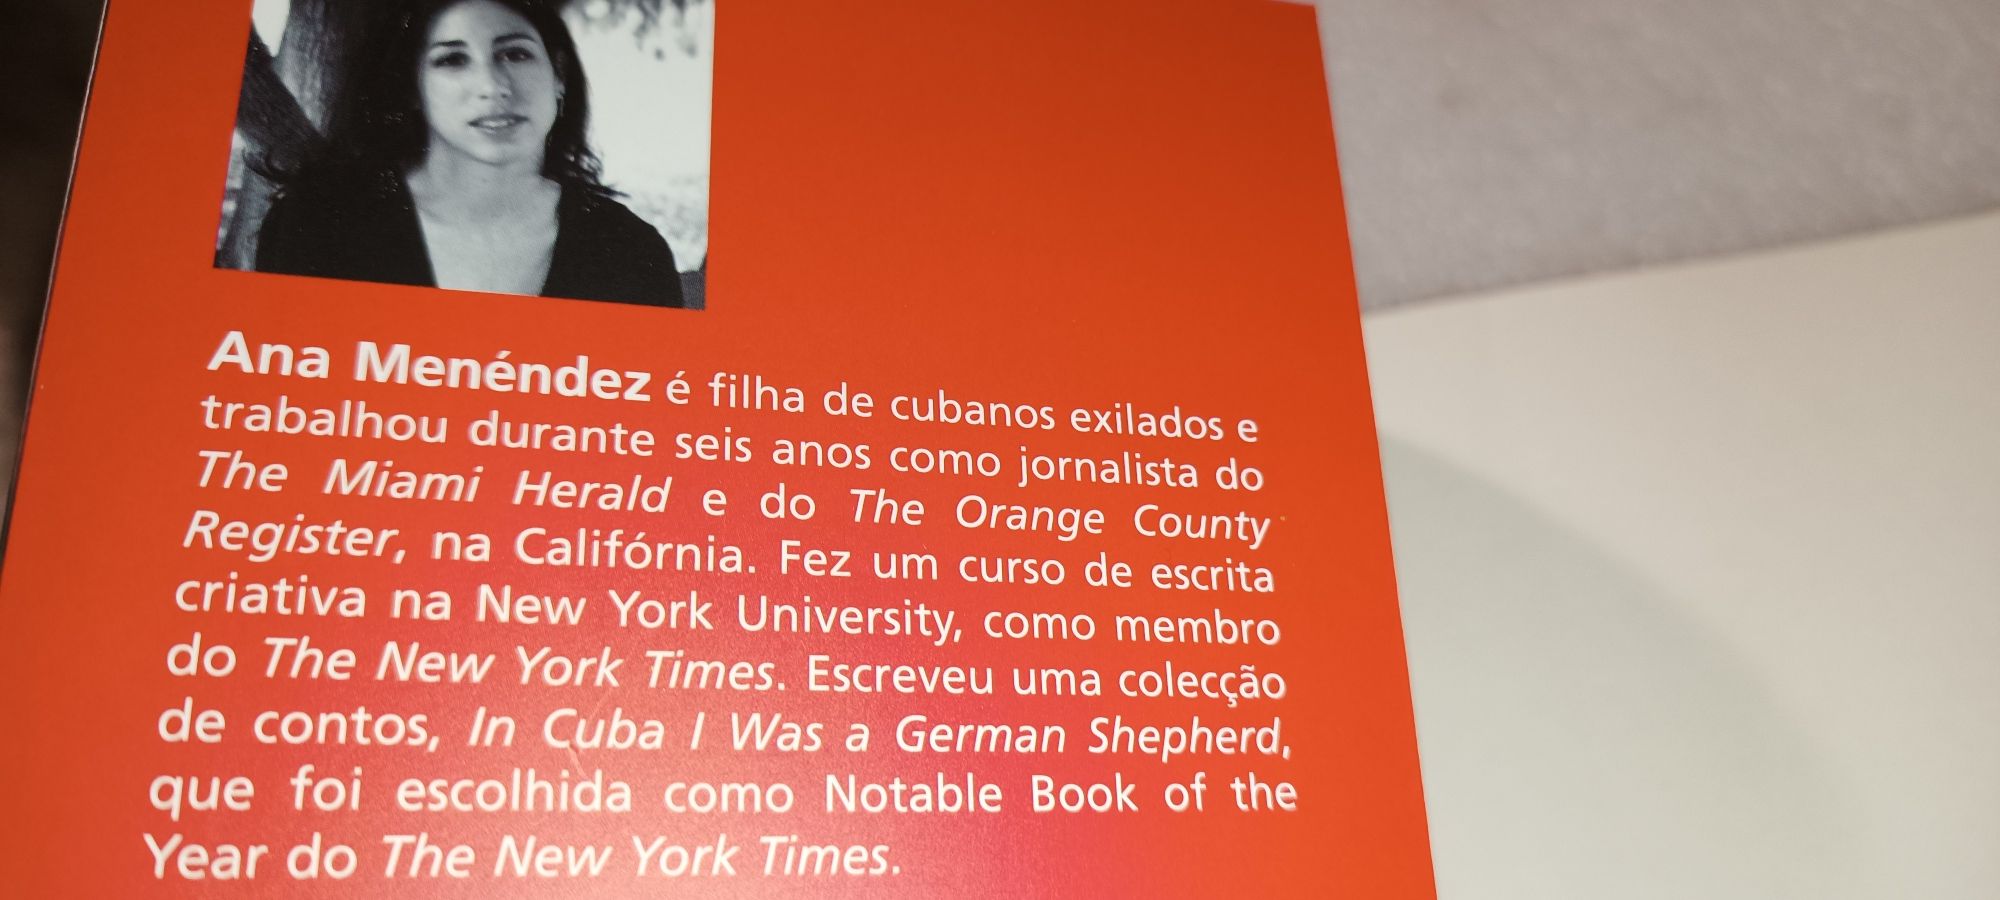 Livro Por Amor a Che, 2 edição portuguesa 2005